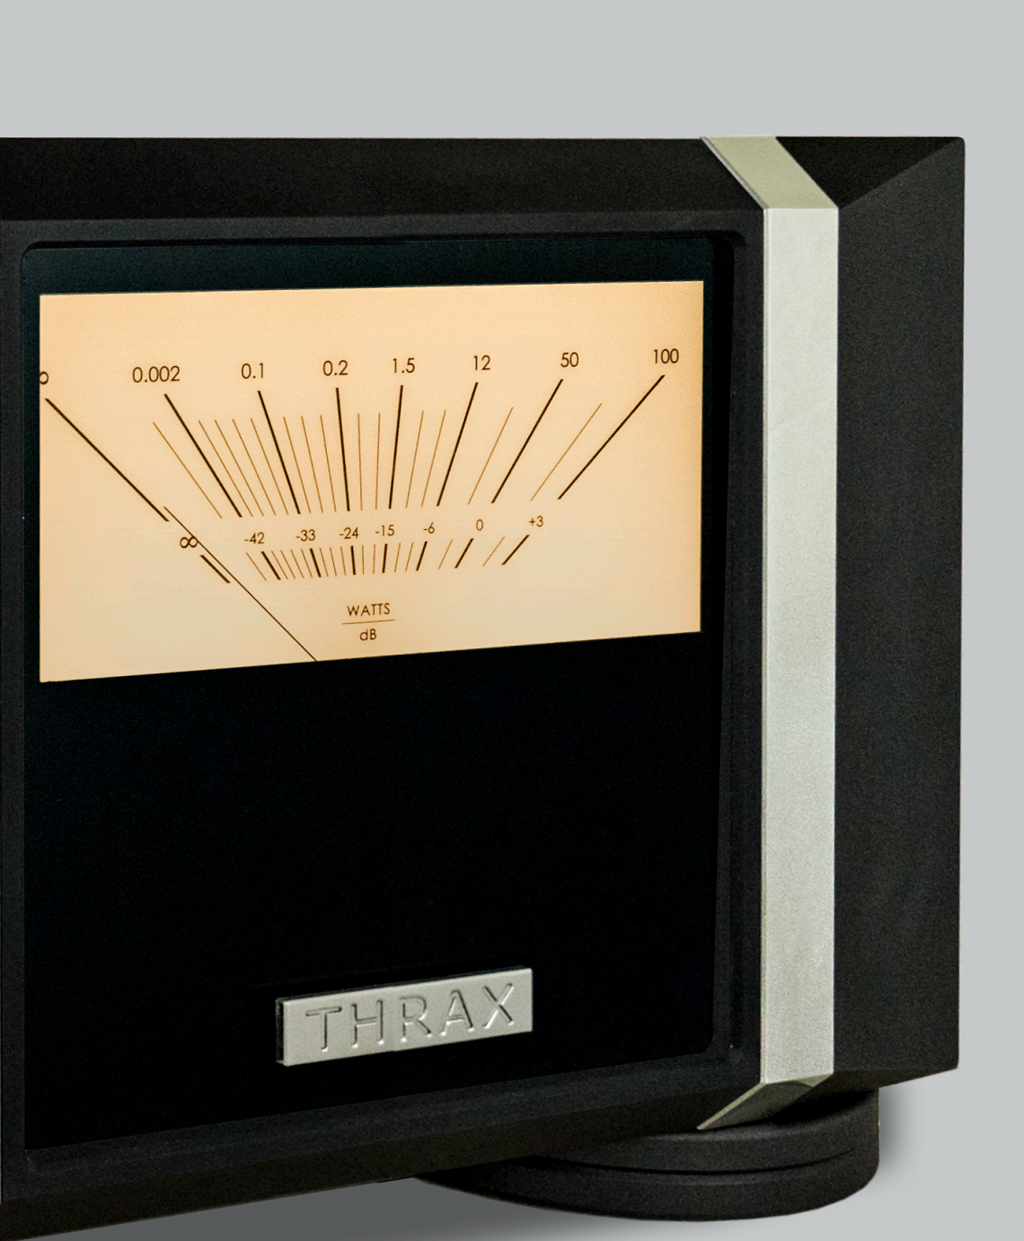 SPARTACUS 300 – Khuếch đại công suất thuần bóng 300B thuần khiết của Thrax Audio ảnh 5